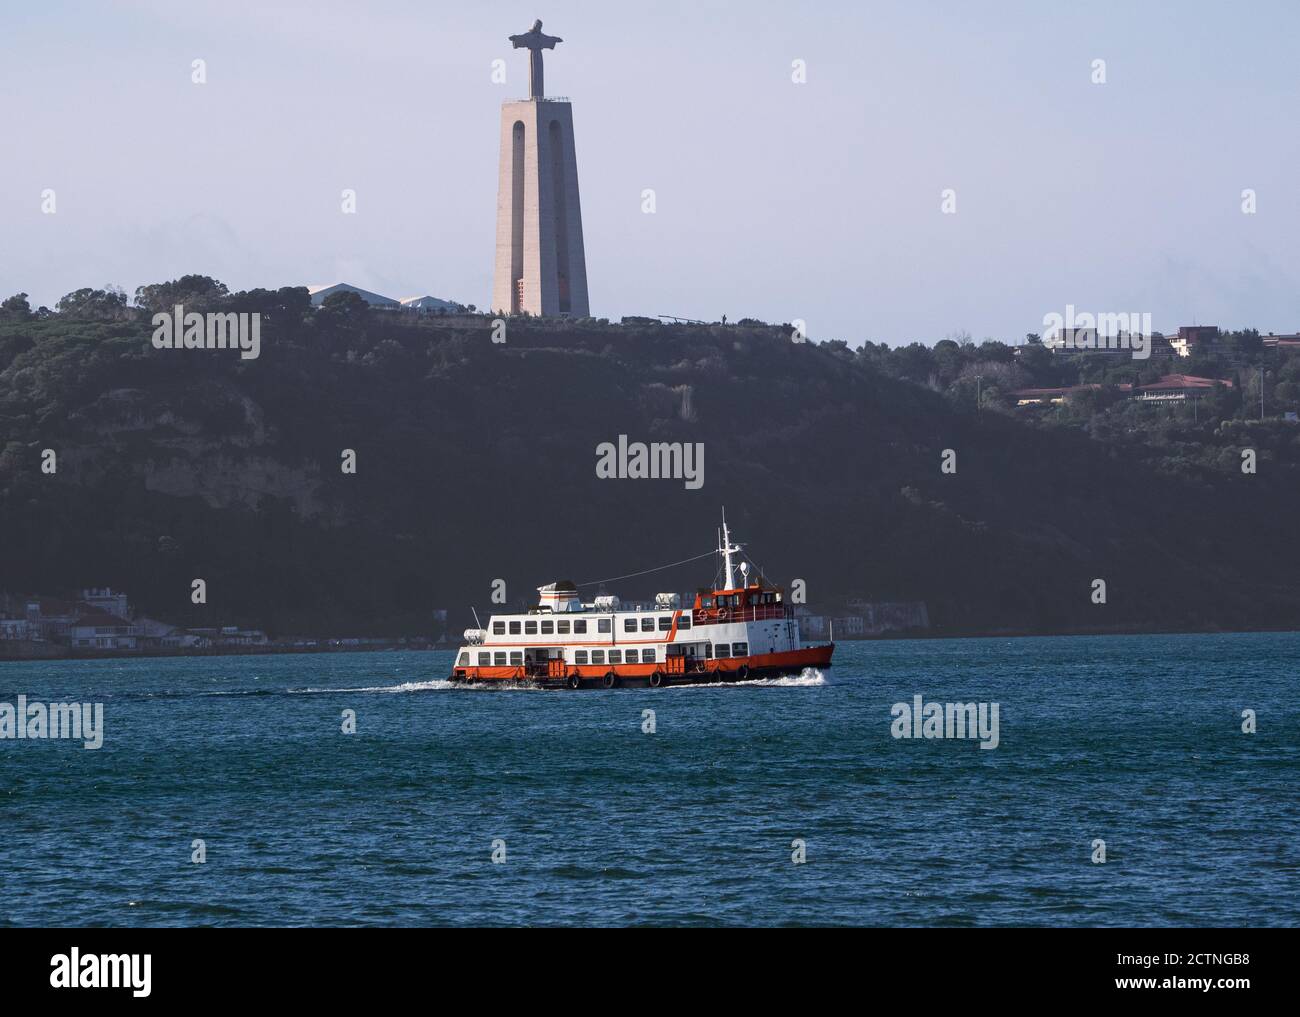 La nave passa sotto il Santuario di Cristo Re in barca a vela Sul fiume Tago proveniente da Lisbona, Portogallo Foto Stock